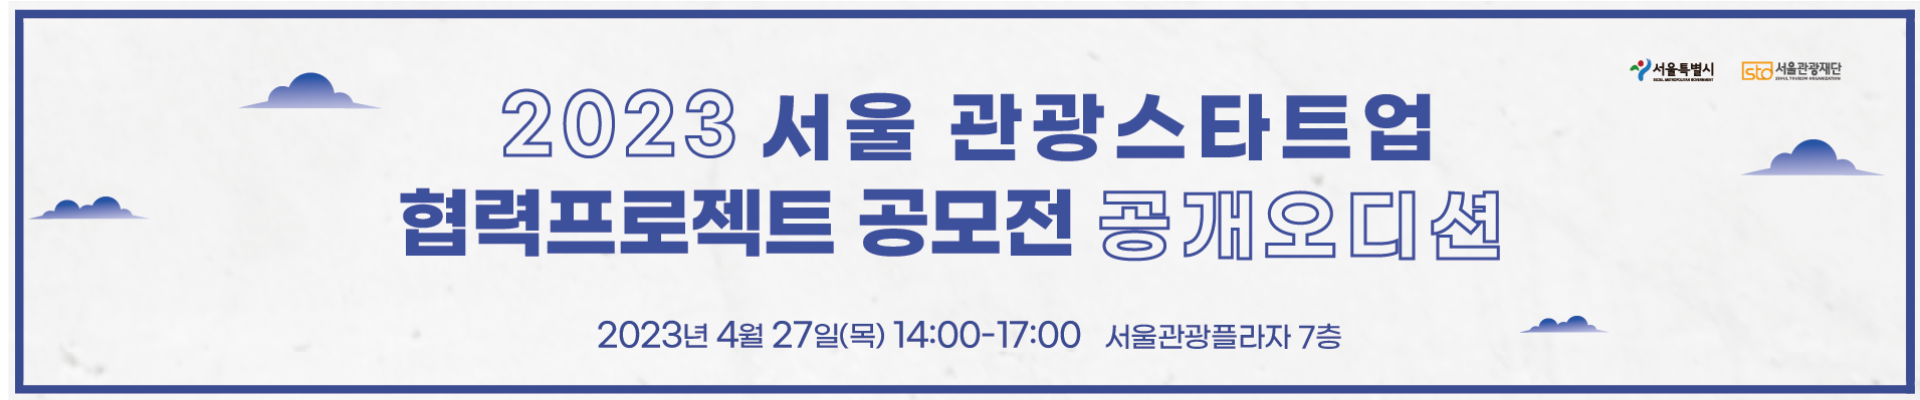 2023 서울 관광스타트업 협력프로젝트 공개오디션